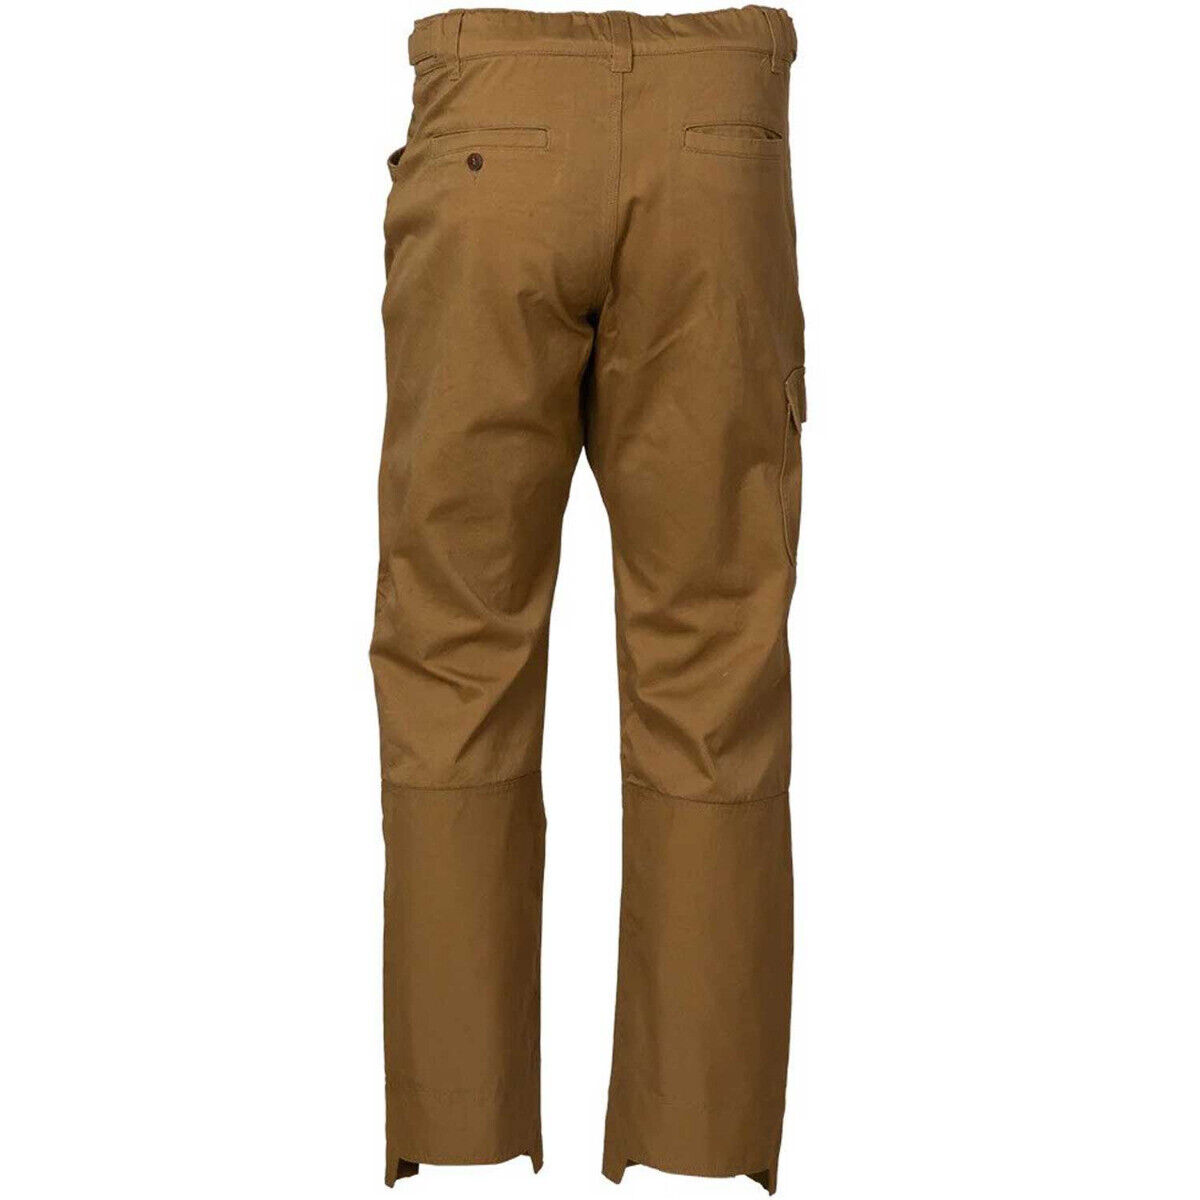 Banded Tall Grass Chap Pants-Khaki-30W 32L 848222097718 | eBay